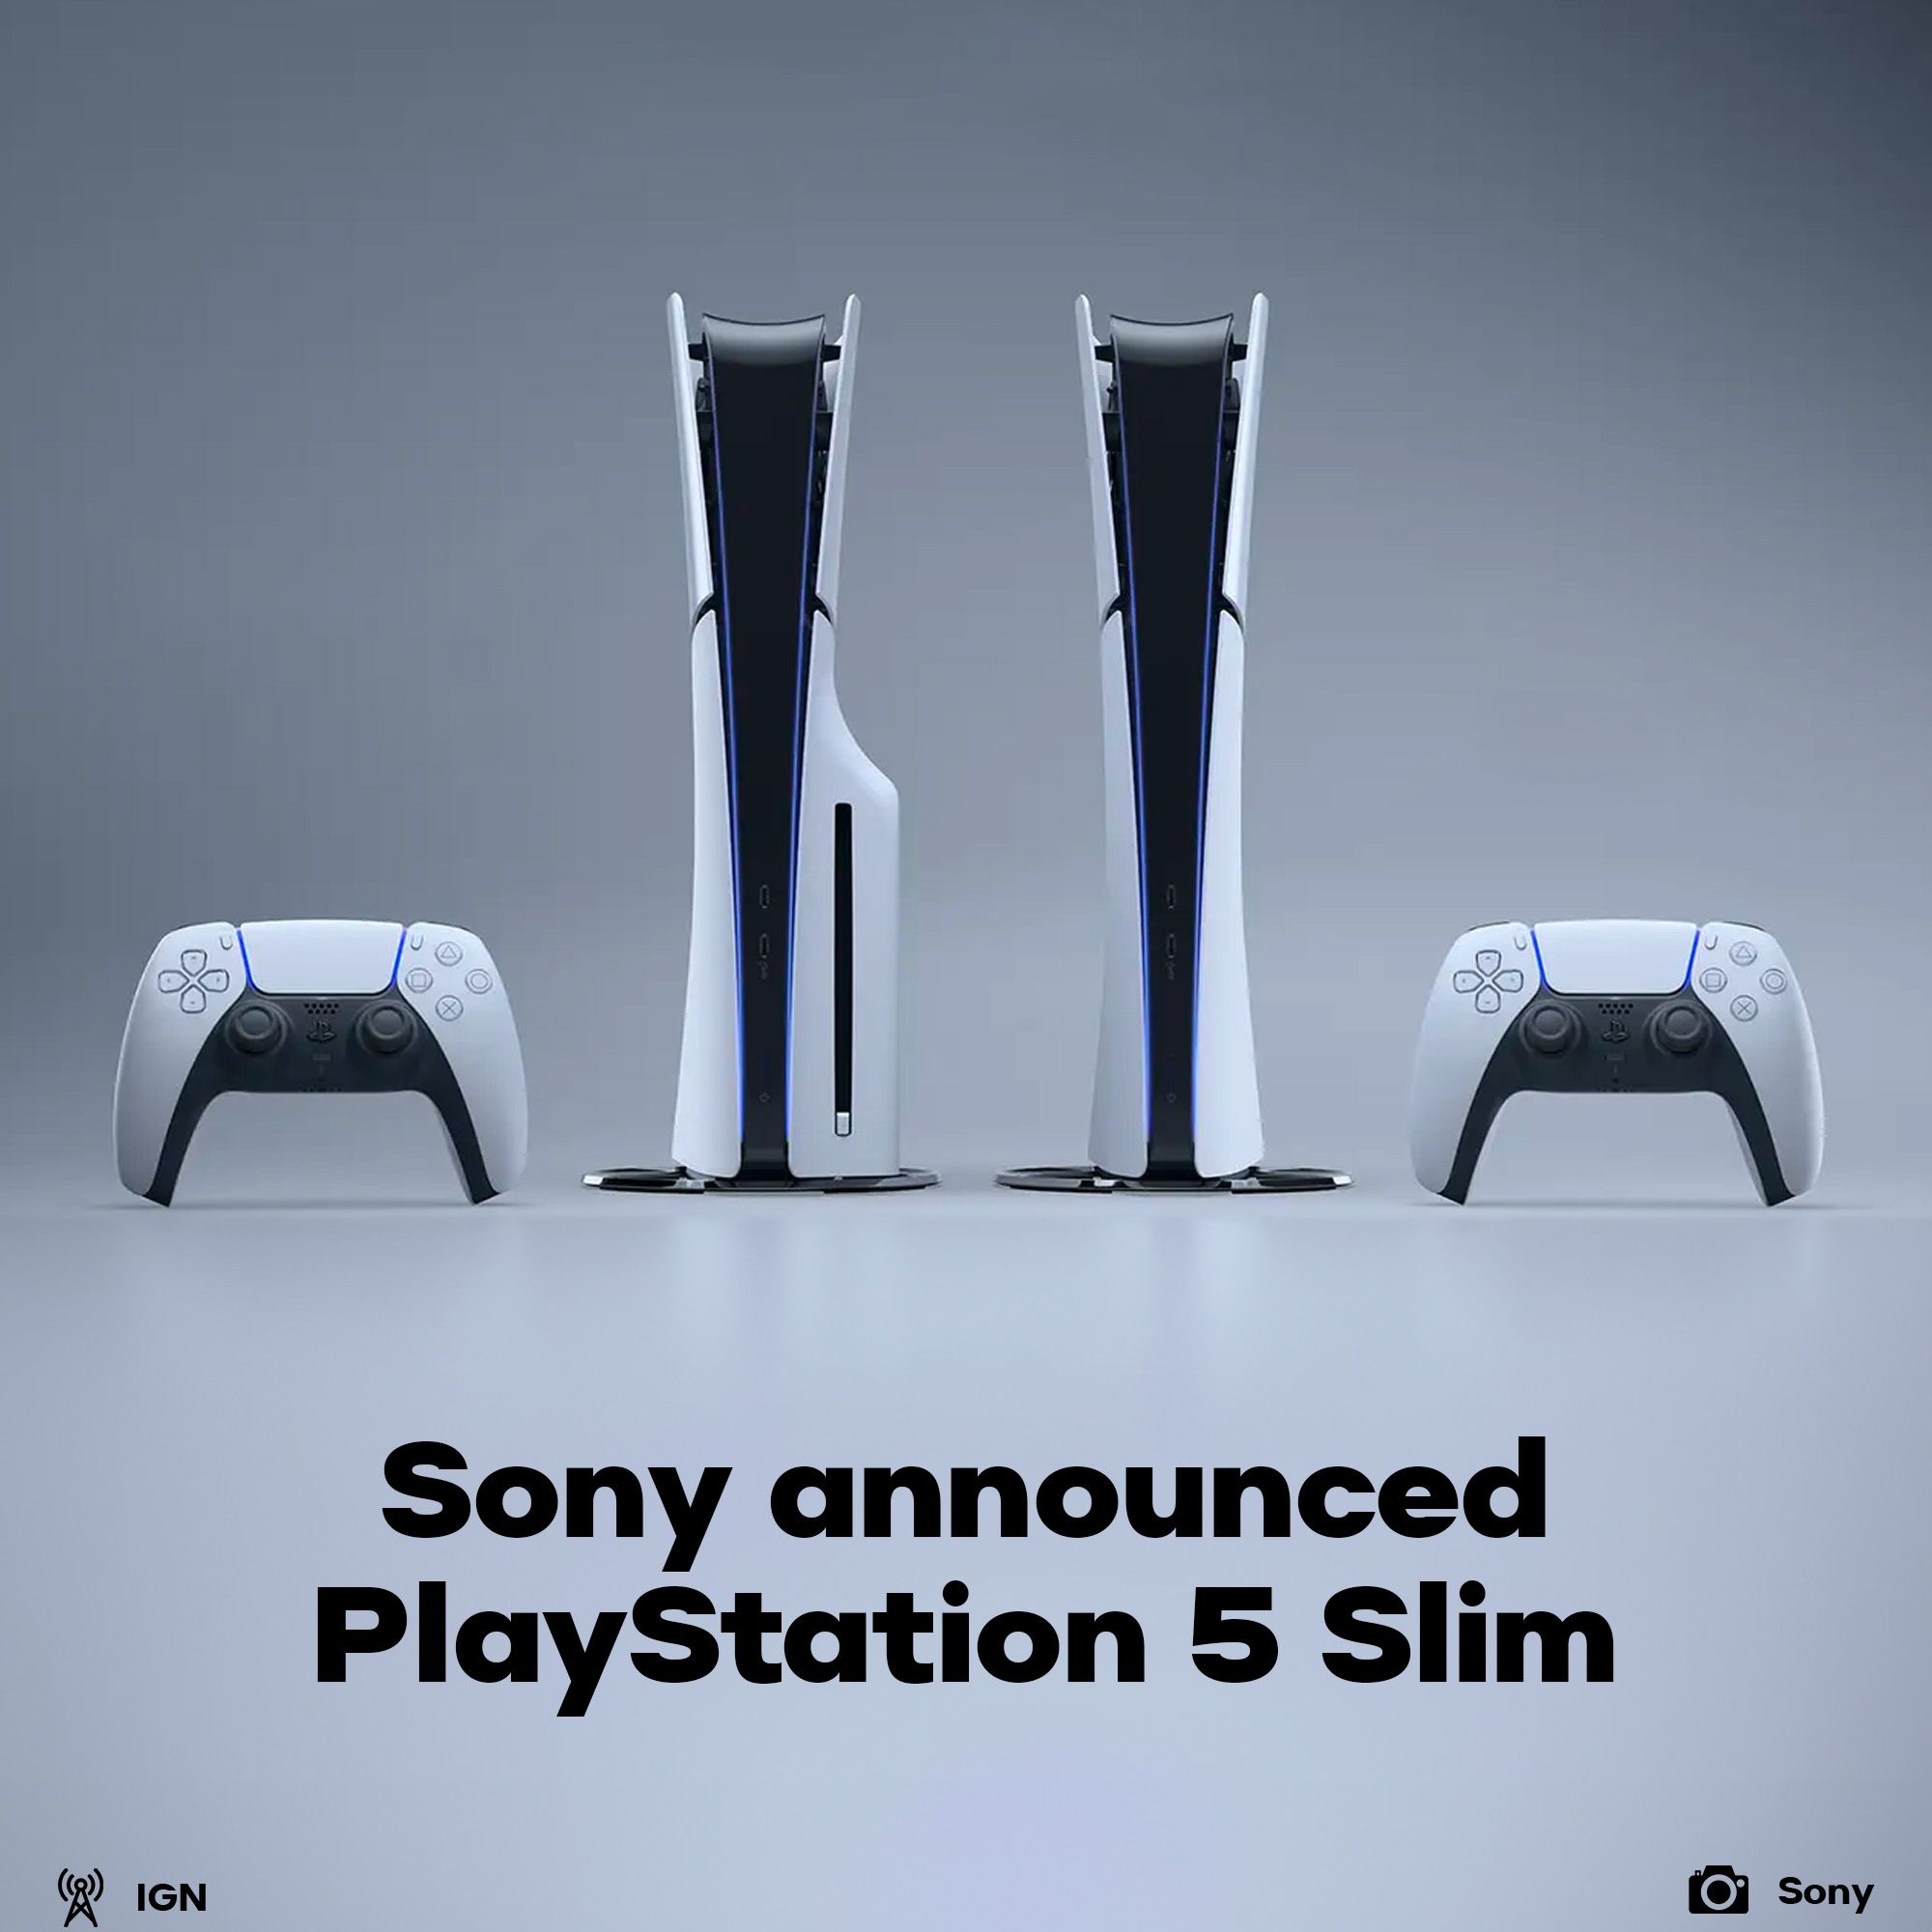 Sony announced PlayStation 5 Slim